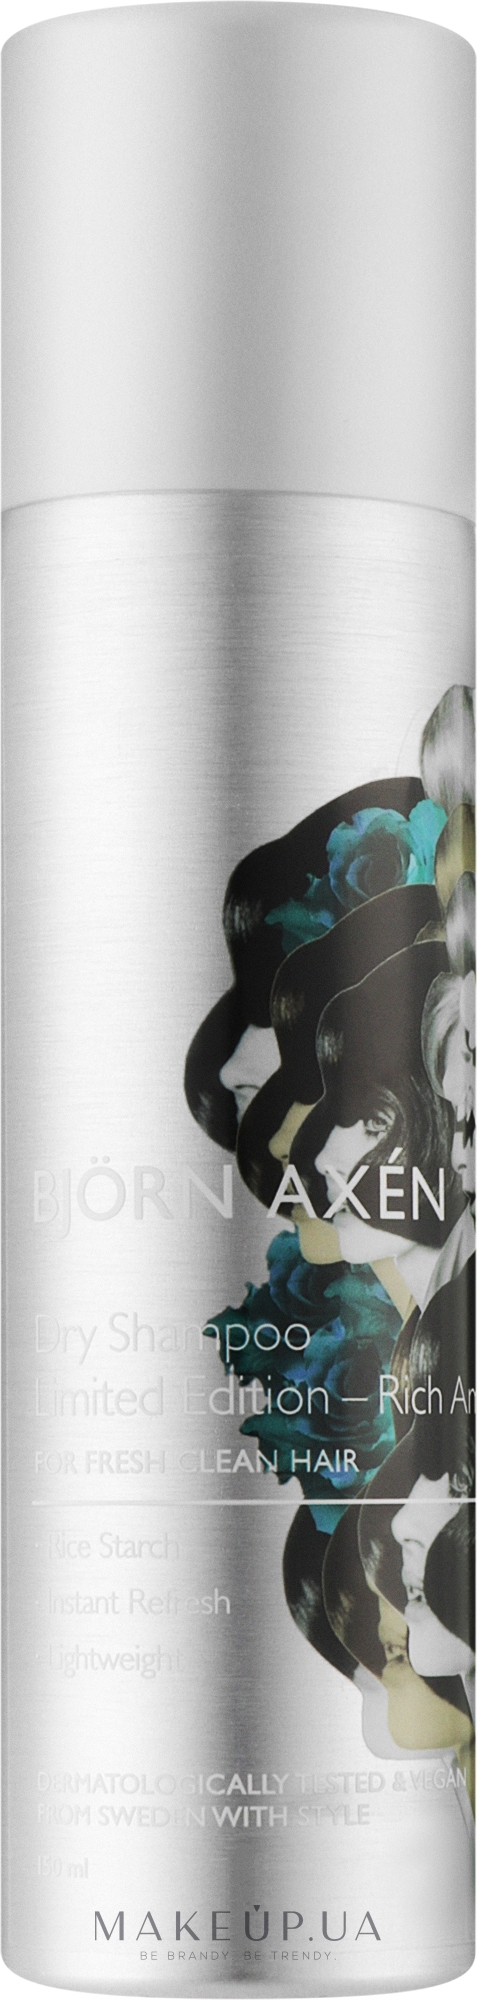 Сухий шампунь для волосся - Bjorn Axen Dry Shampoo Rich Amber — фото 150ml